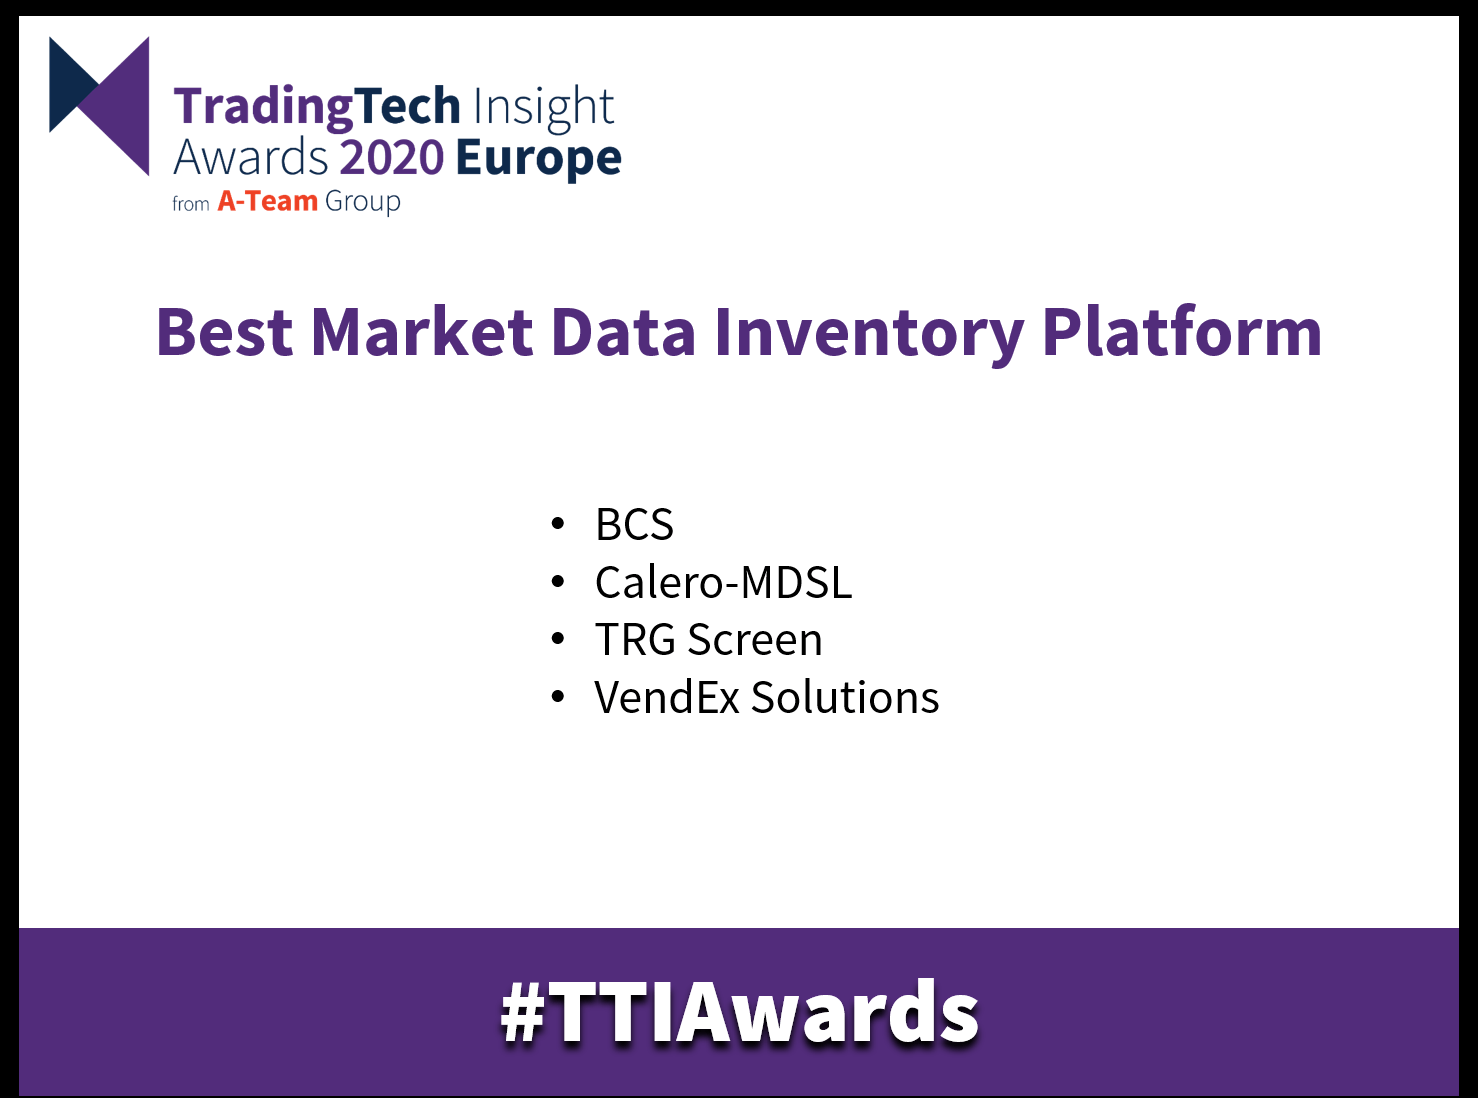 radingTech Insight Awards 2020 Europe Best Market Data Inventory Platform